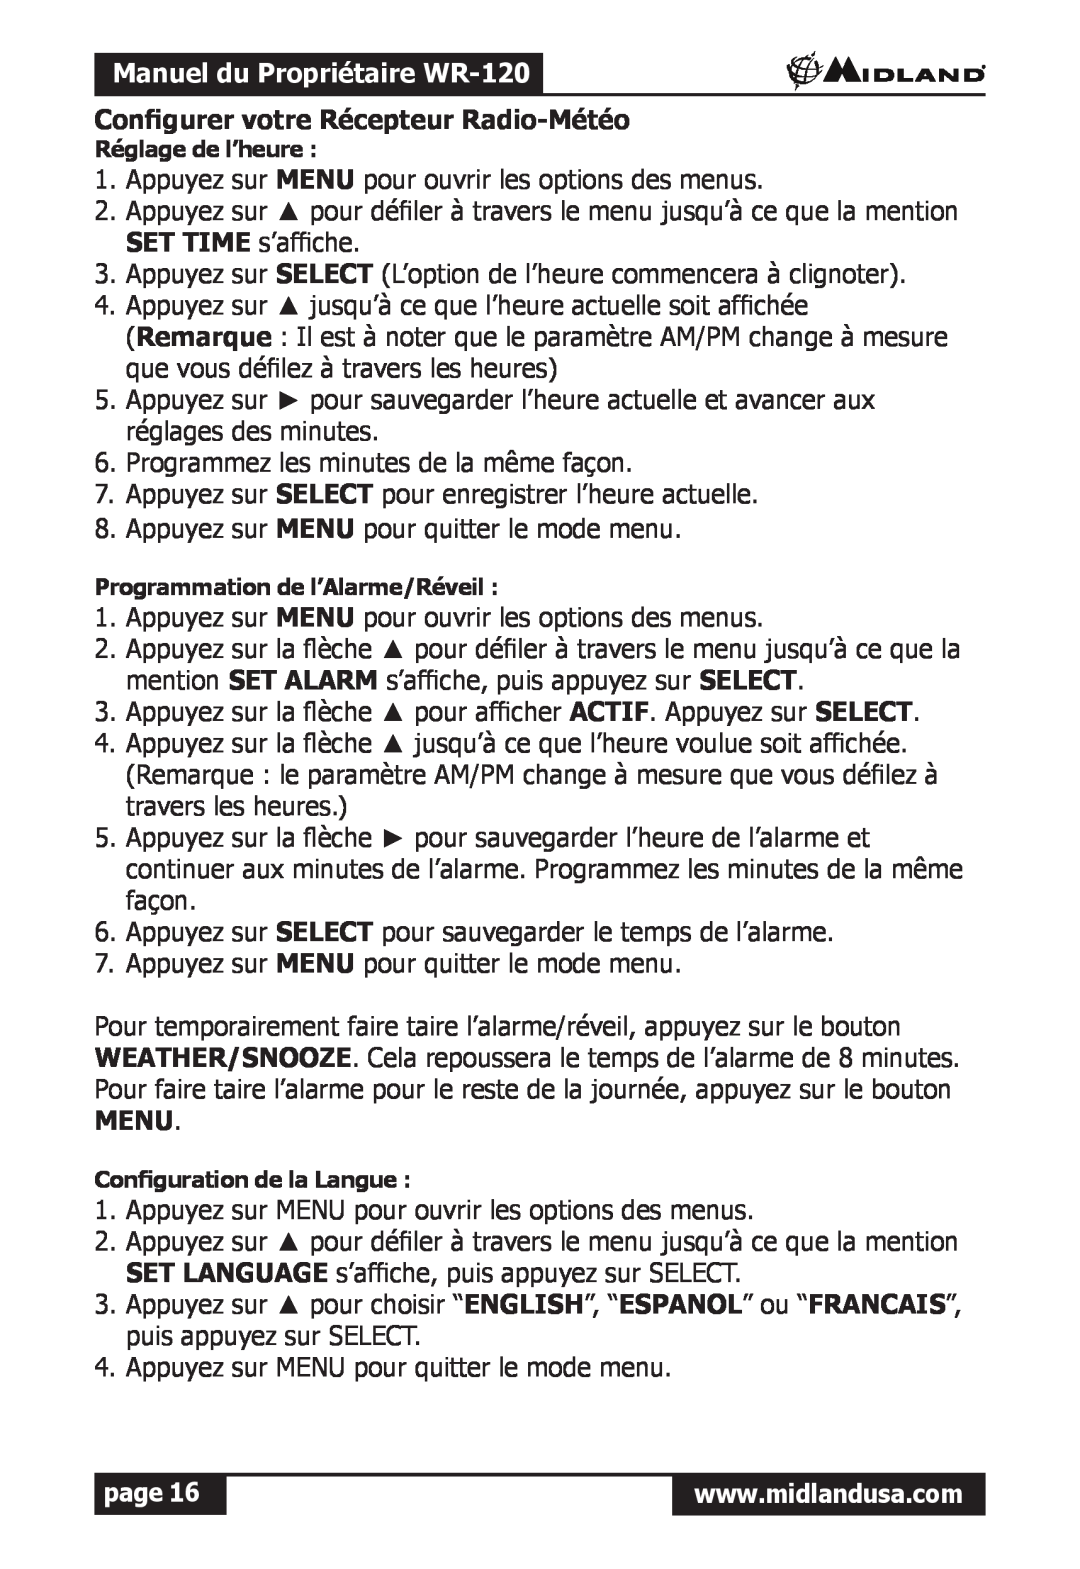 Midland Radio owner manual Manuel du Propriétaire WR-120, Configurer votre Récepteur Radio-Météo, page 